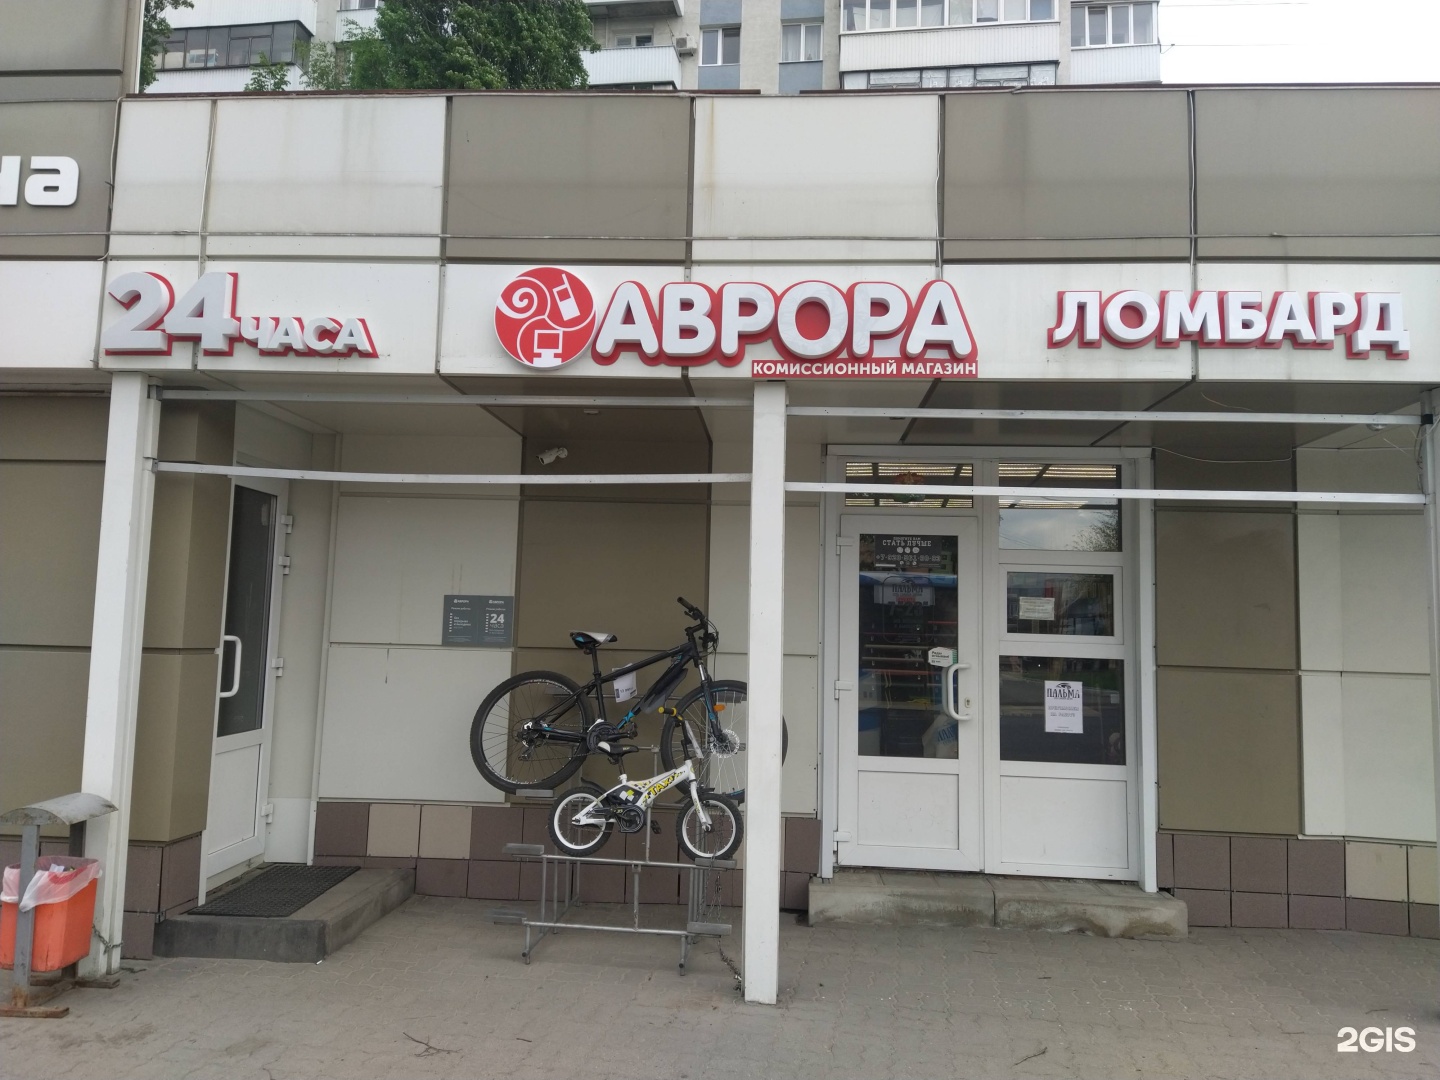 Сеть комиссионных магазинов. Проспект Ватутина 7 Белгород. Ватутина 22 Белгород.